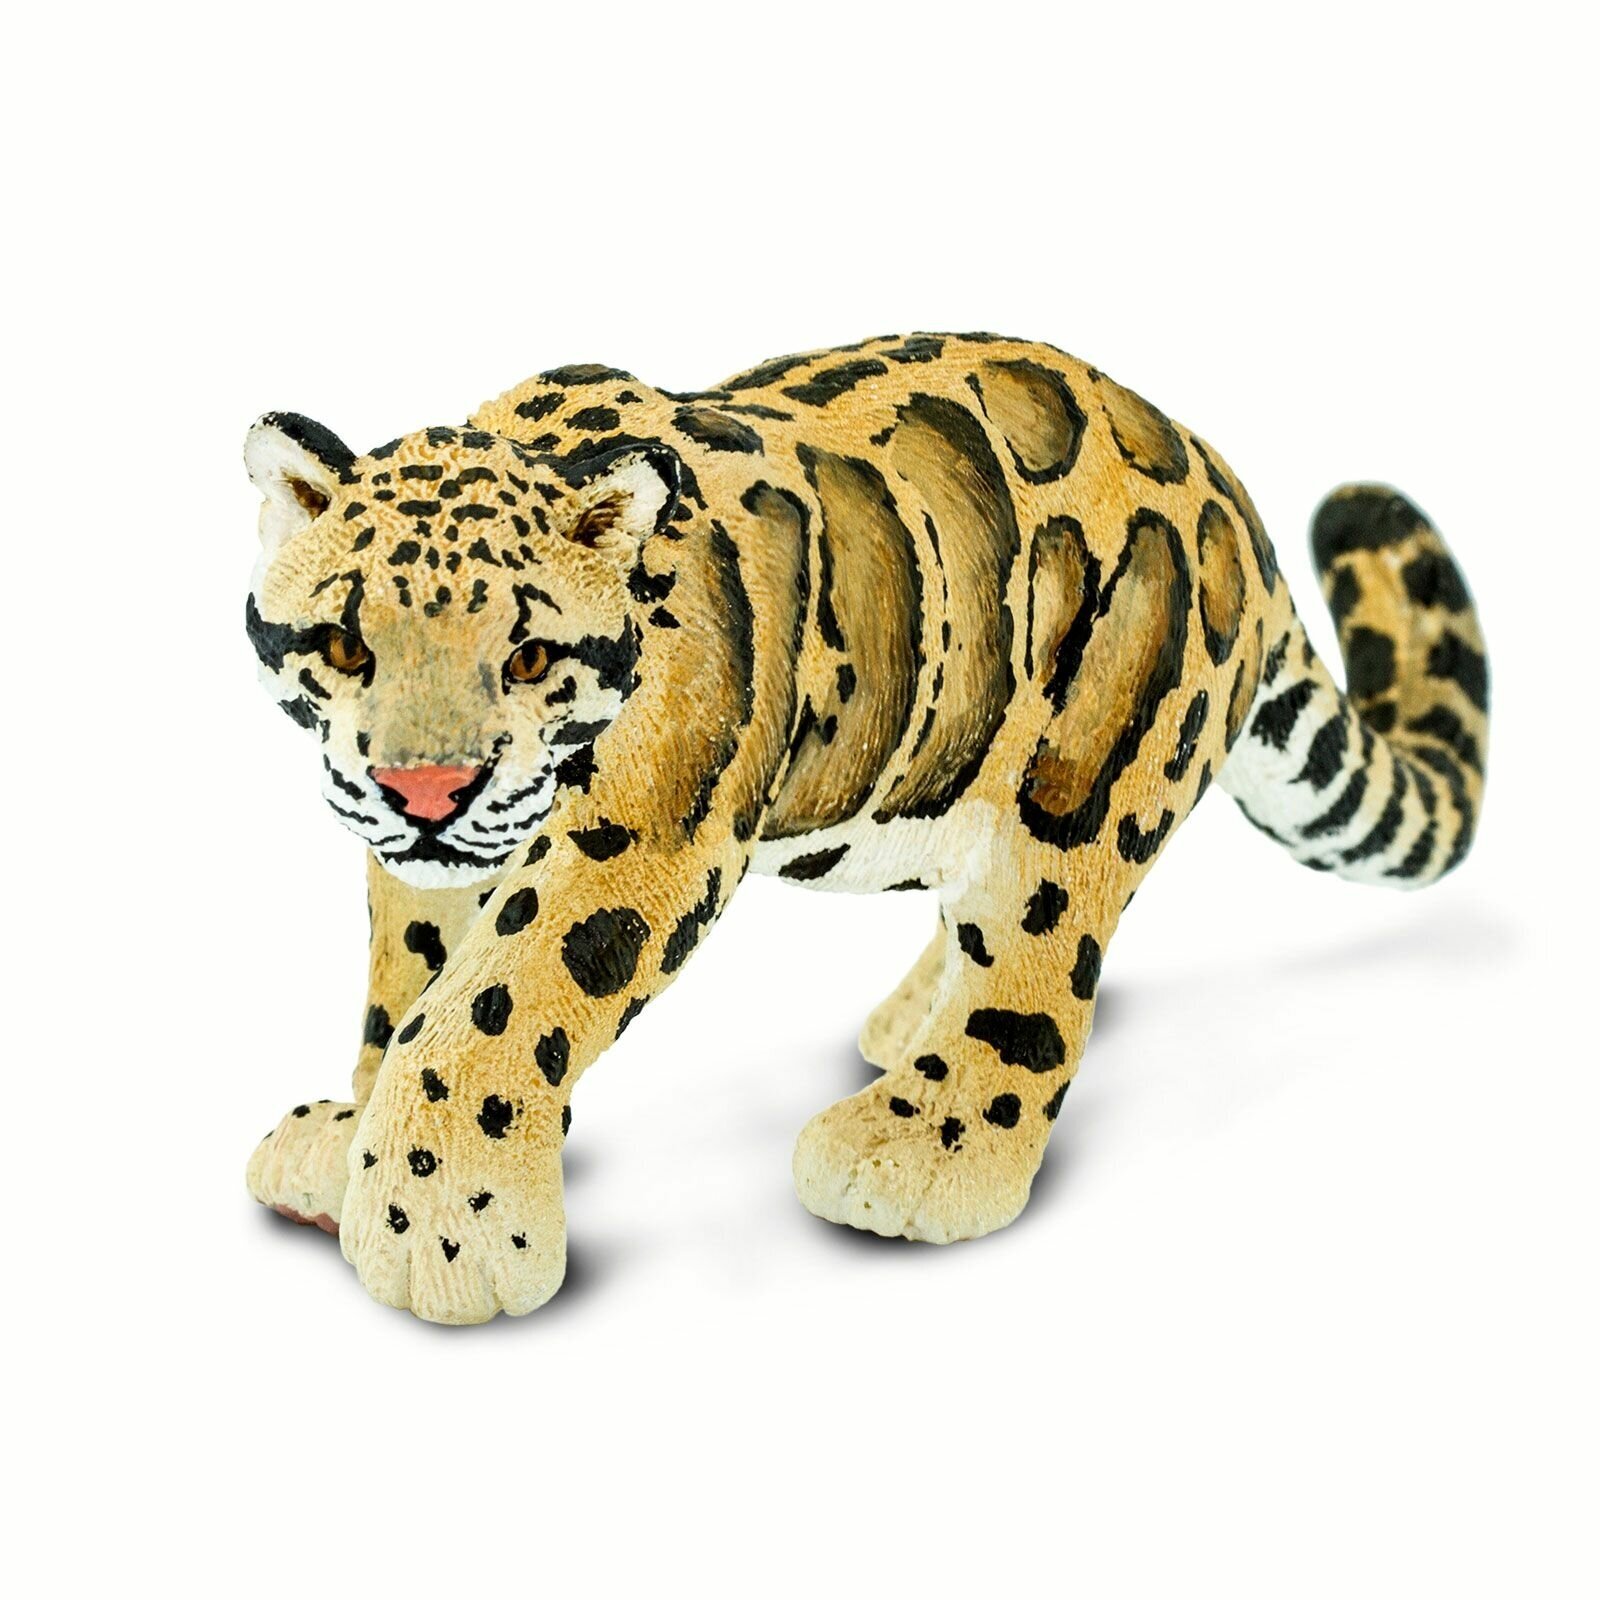 Фигурка животного Safari Ltd Дымчатый леопард, для детей, игрушка коллекционная, 100239